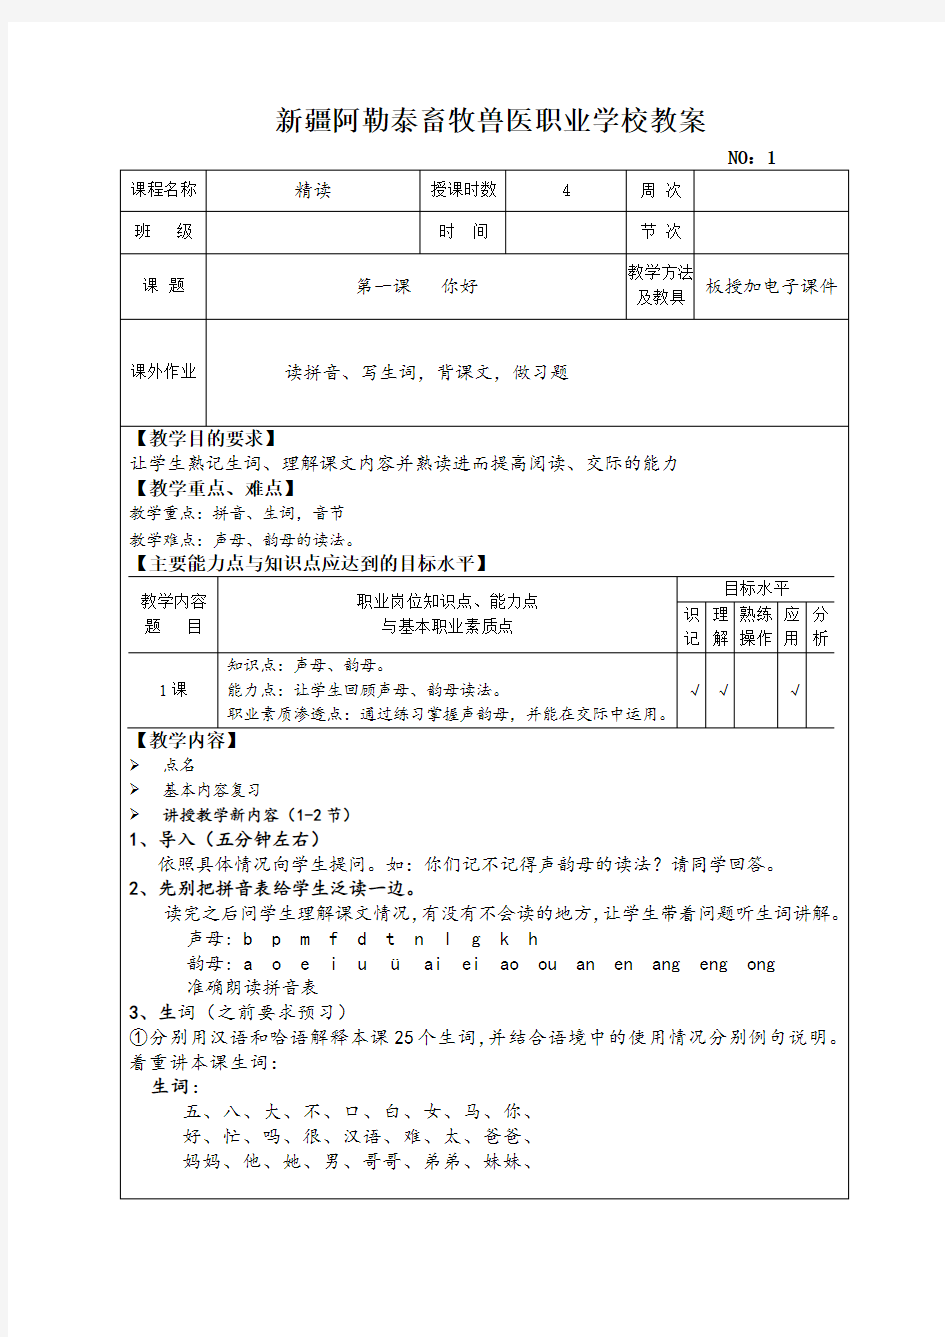 初级汉语教程第一册教案1-20课2017版